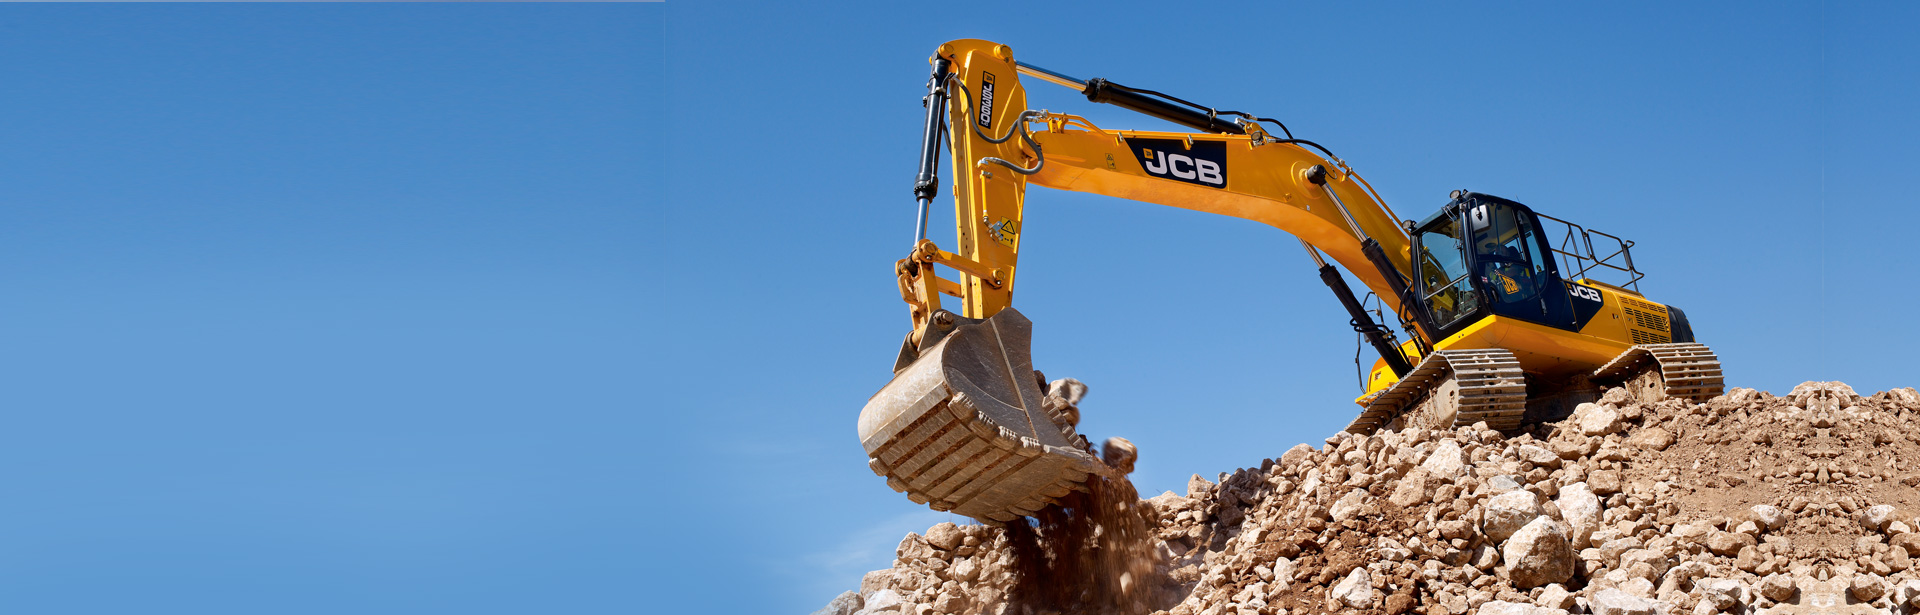 JCB JS360 Tracked Excavators Saudi Arabia